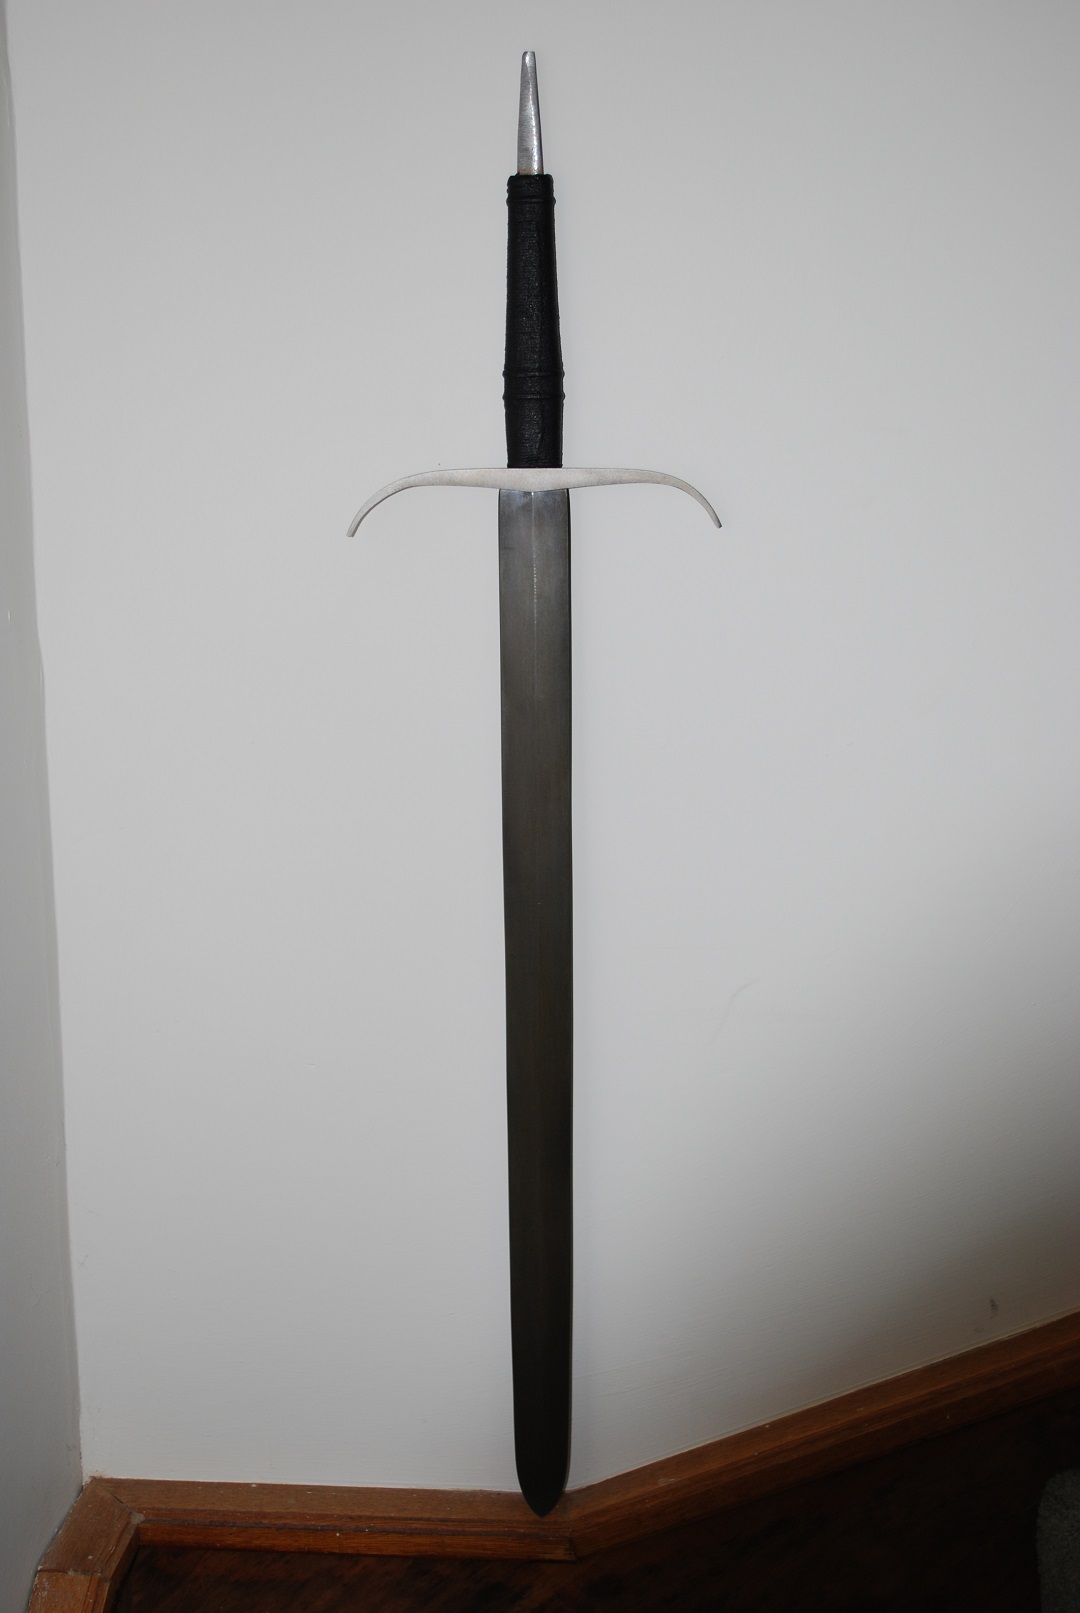 Sword 1: